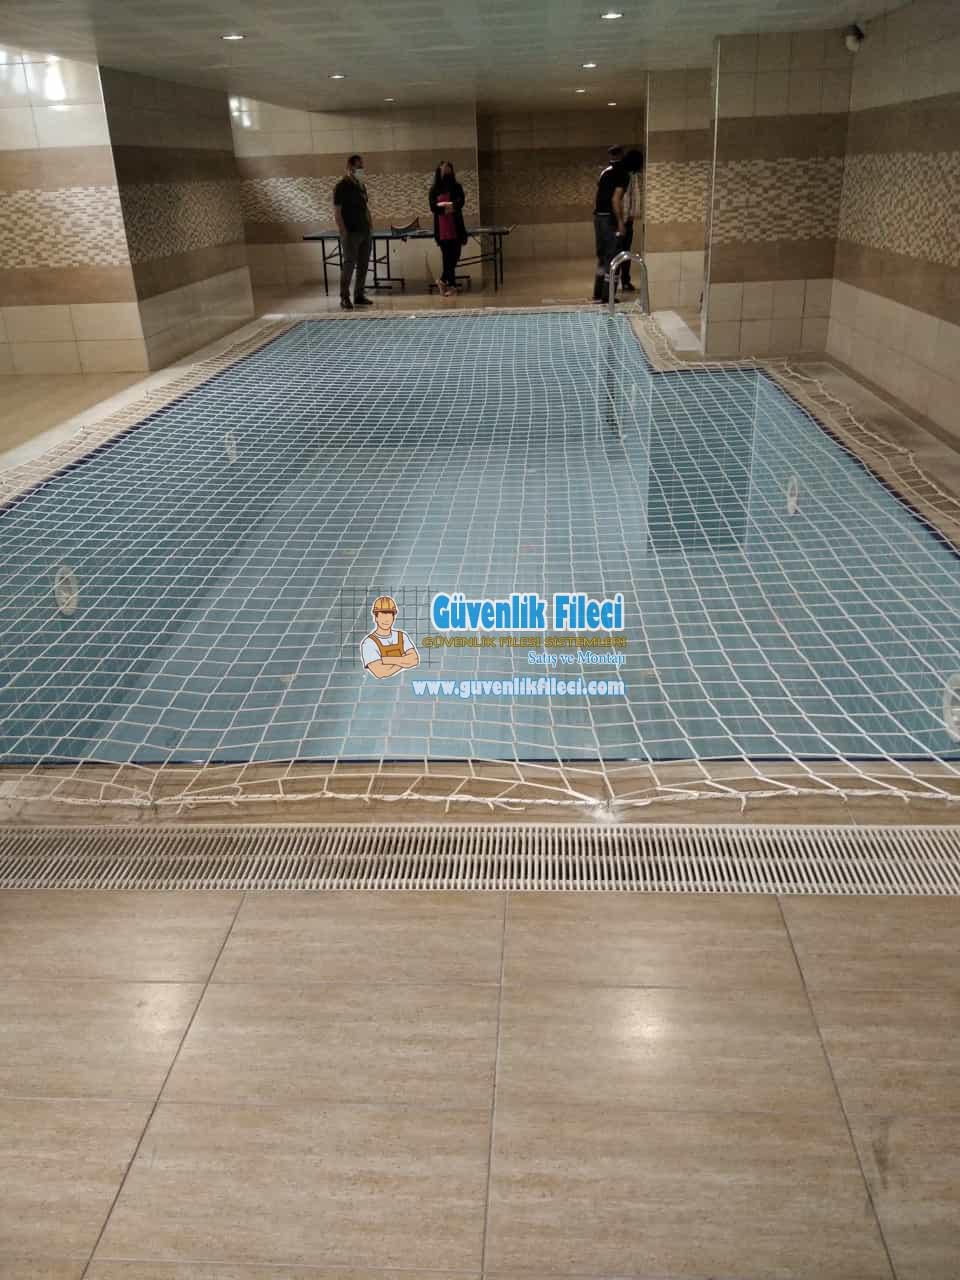 Ankara Keçiören KIZILCAHAMAM TAHTALAR MAH. Havuz Güvenlik Filesi Projesi Devam Ediyor.